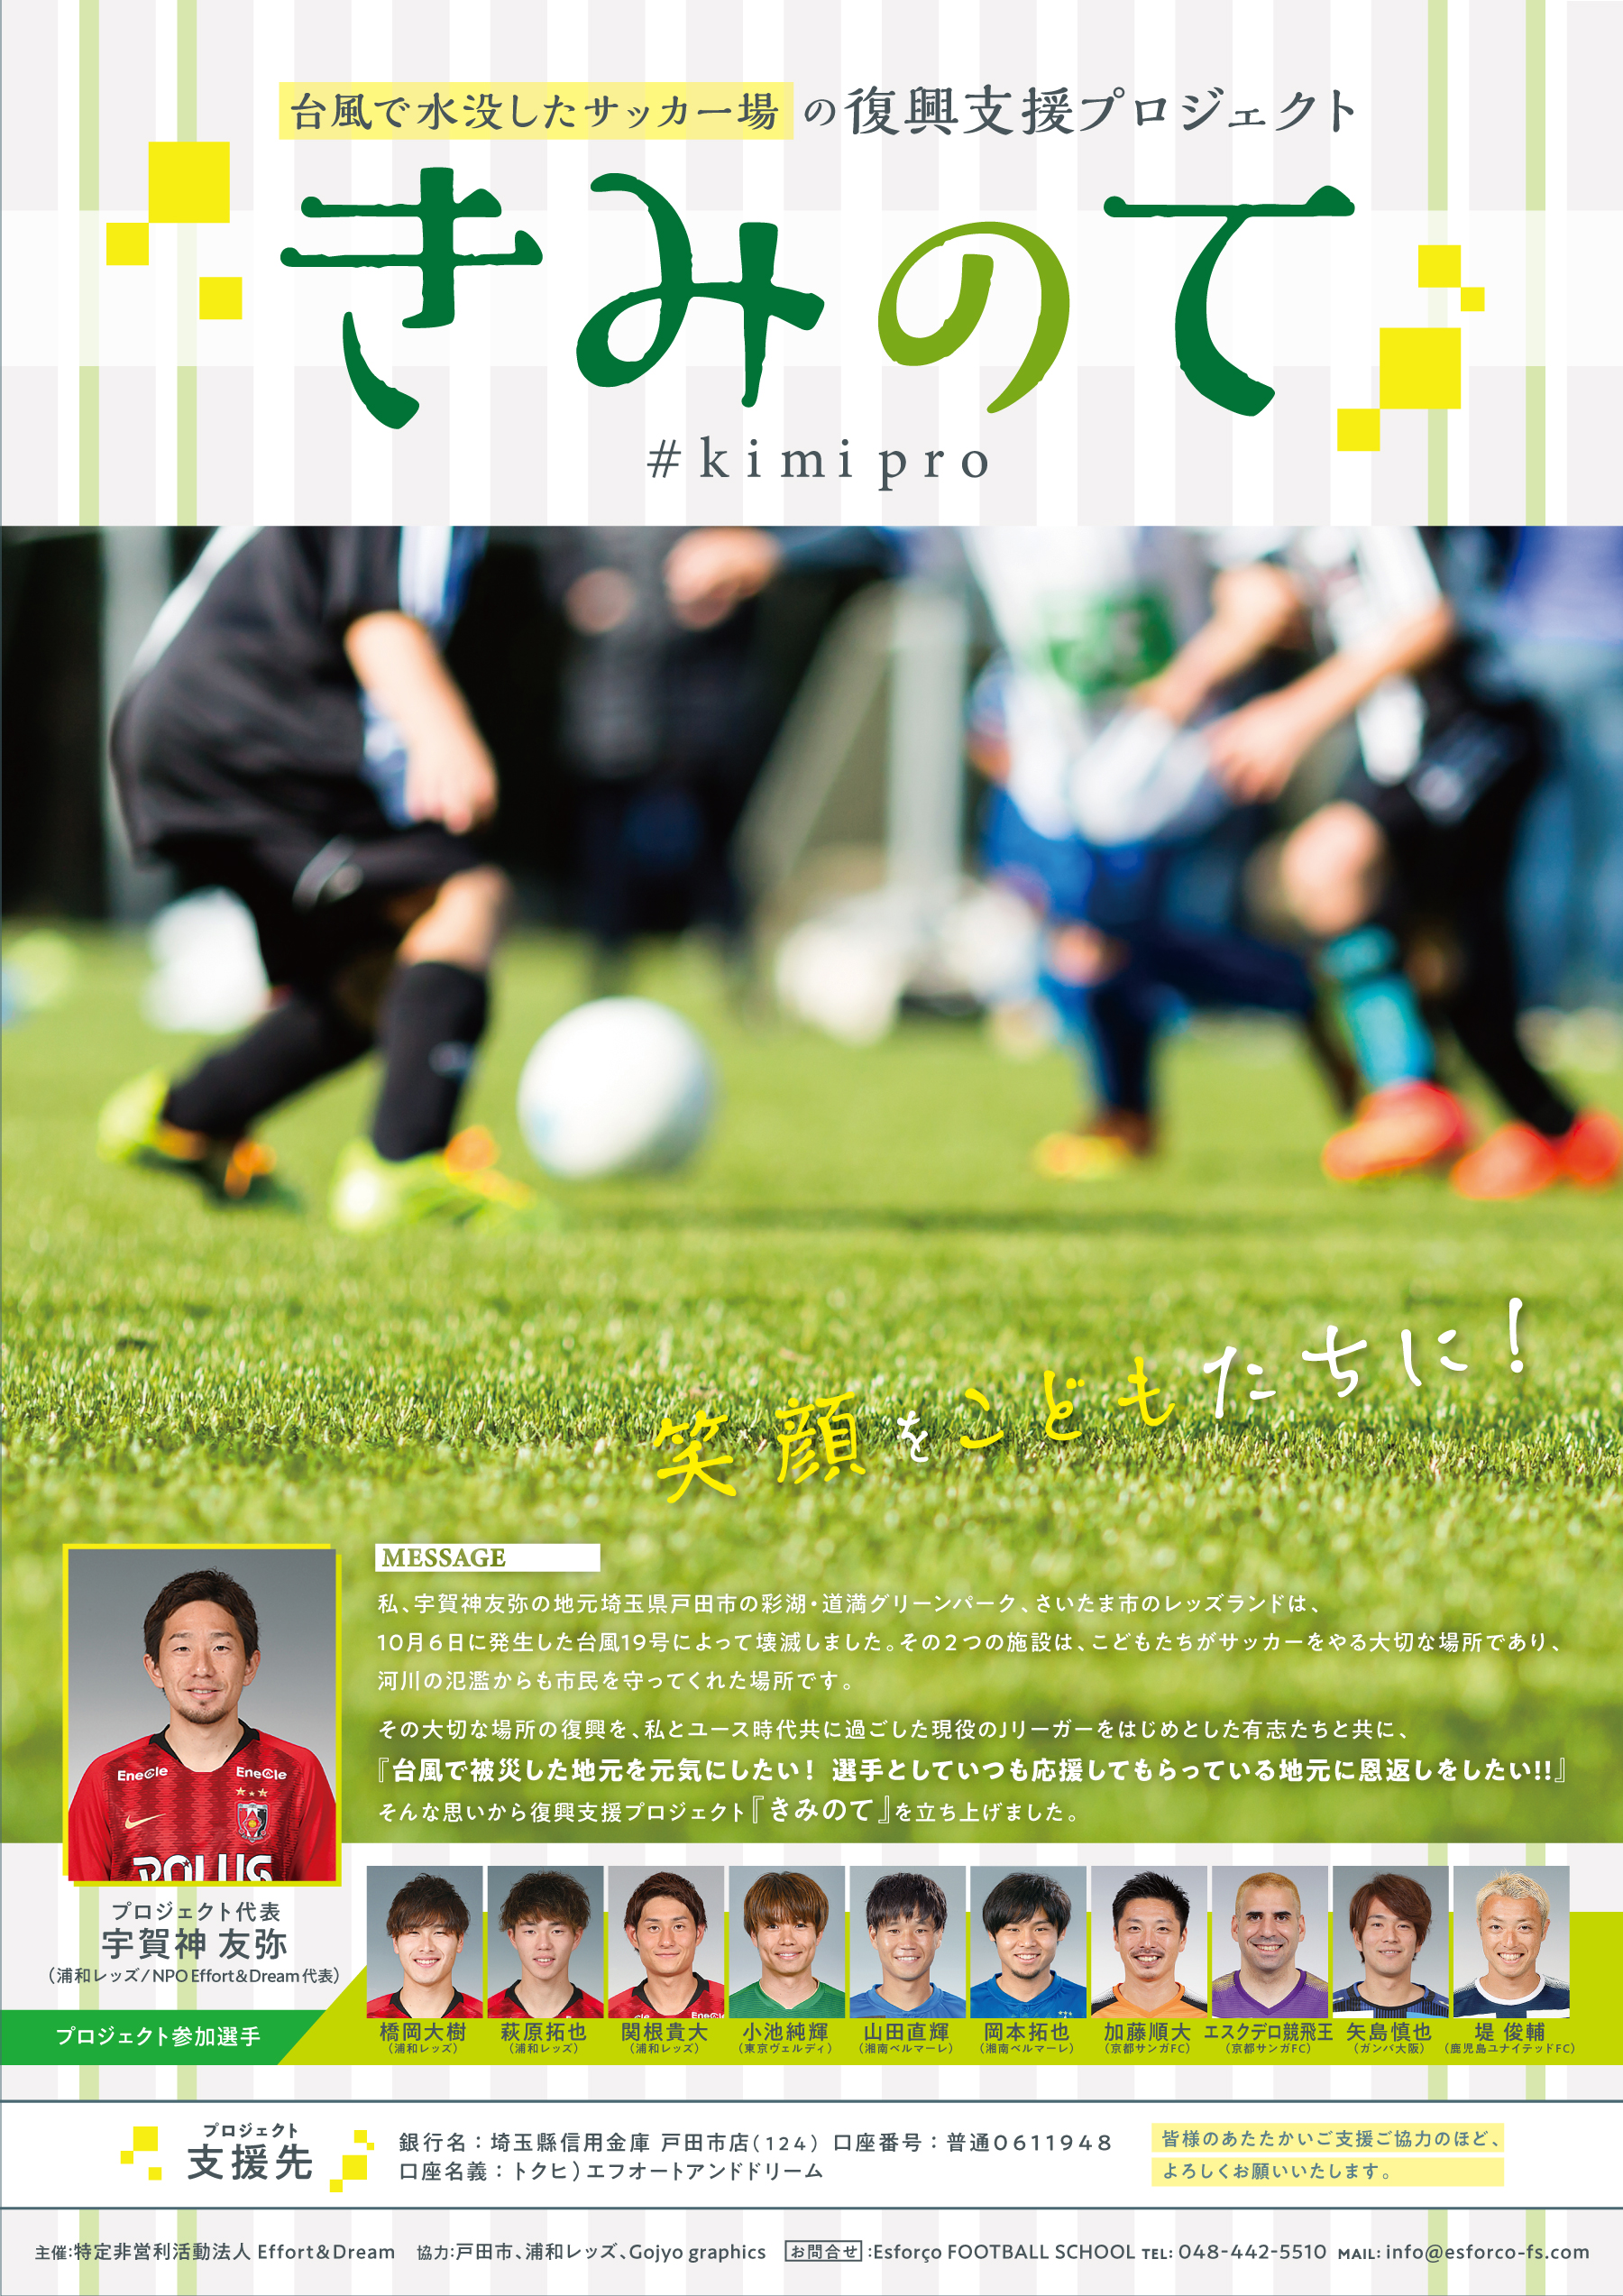 3 公式 戸田市のフットボールスクール フットサルコート Ugajin Esforco Place